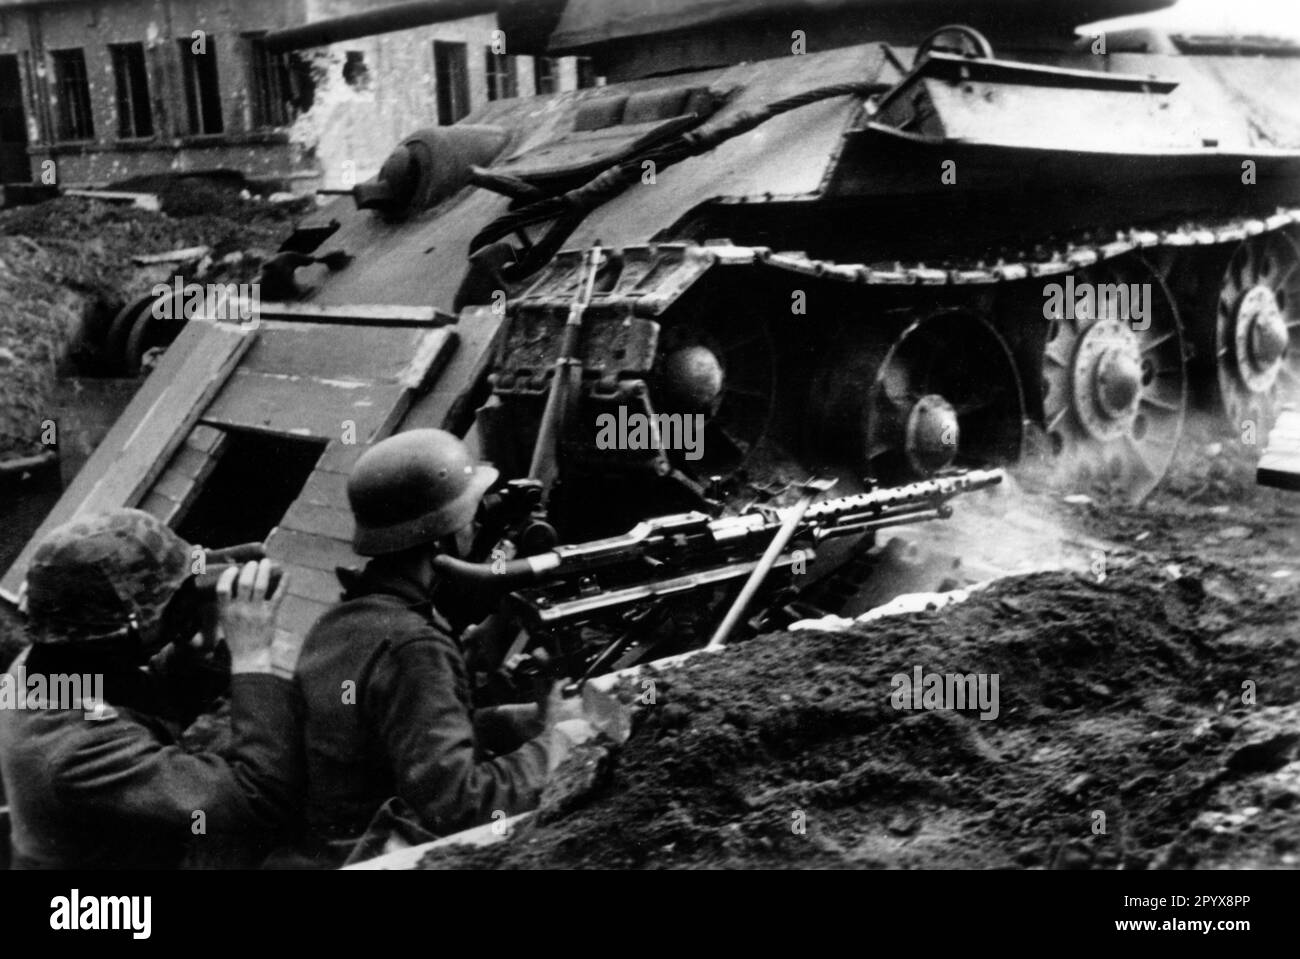 Soldats allemands avec une mitrailleuse MG 34 dans une position à Voronezh. Ils ont mis en place un abri sous le T34 défait. Photo: Müller-Schwannecke [traduction automatique] Banque D'Images